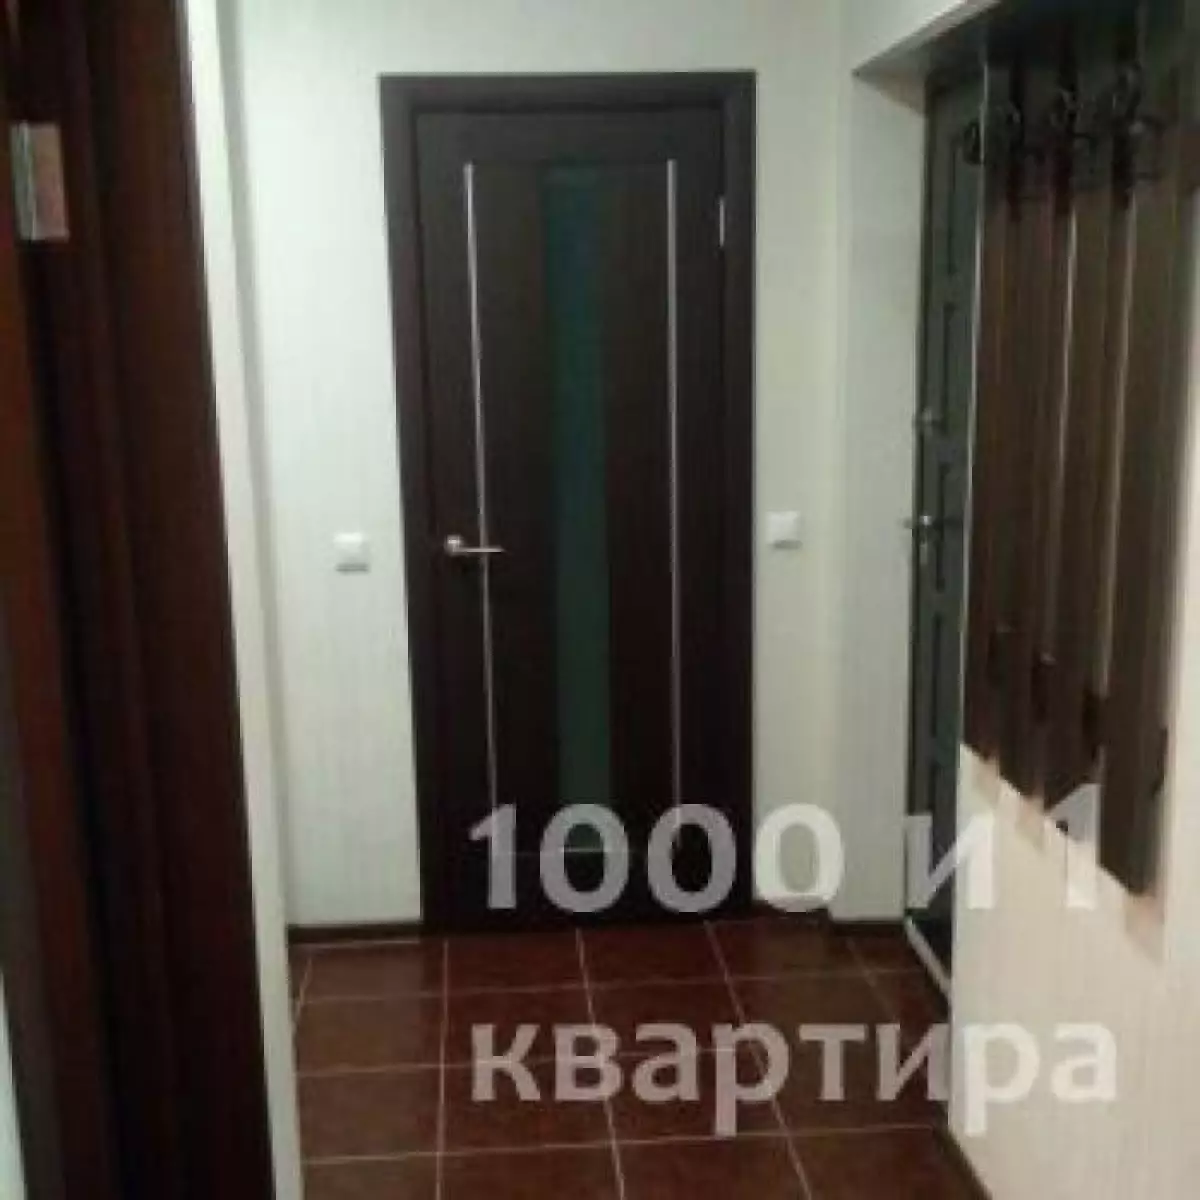 Вариант #68695 для аренды посуточно в Казани Ямашева, д.35 на 6 гостей - фото 6